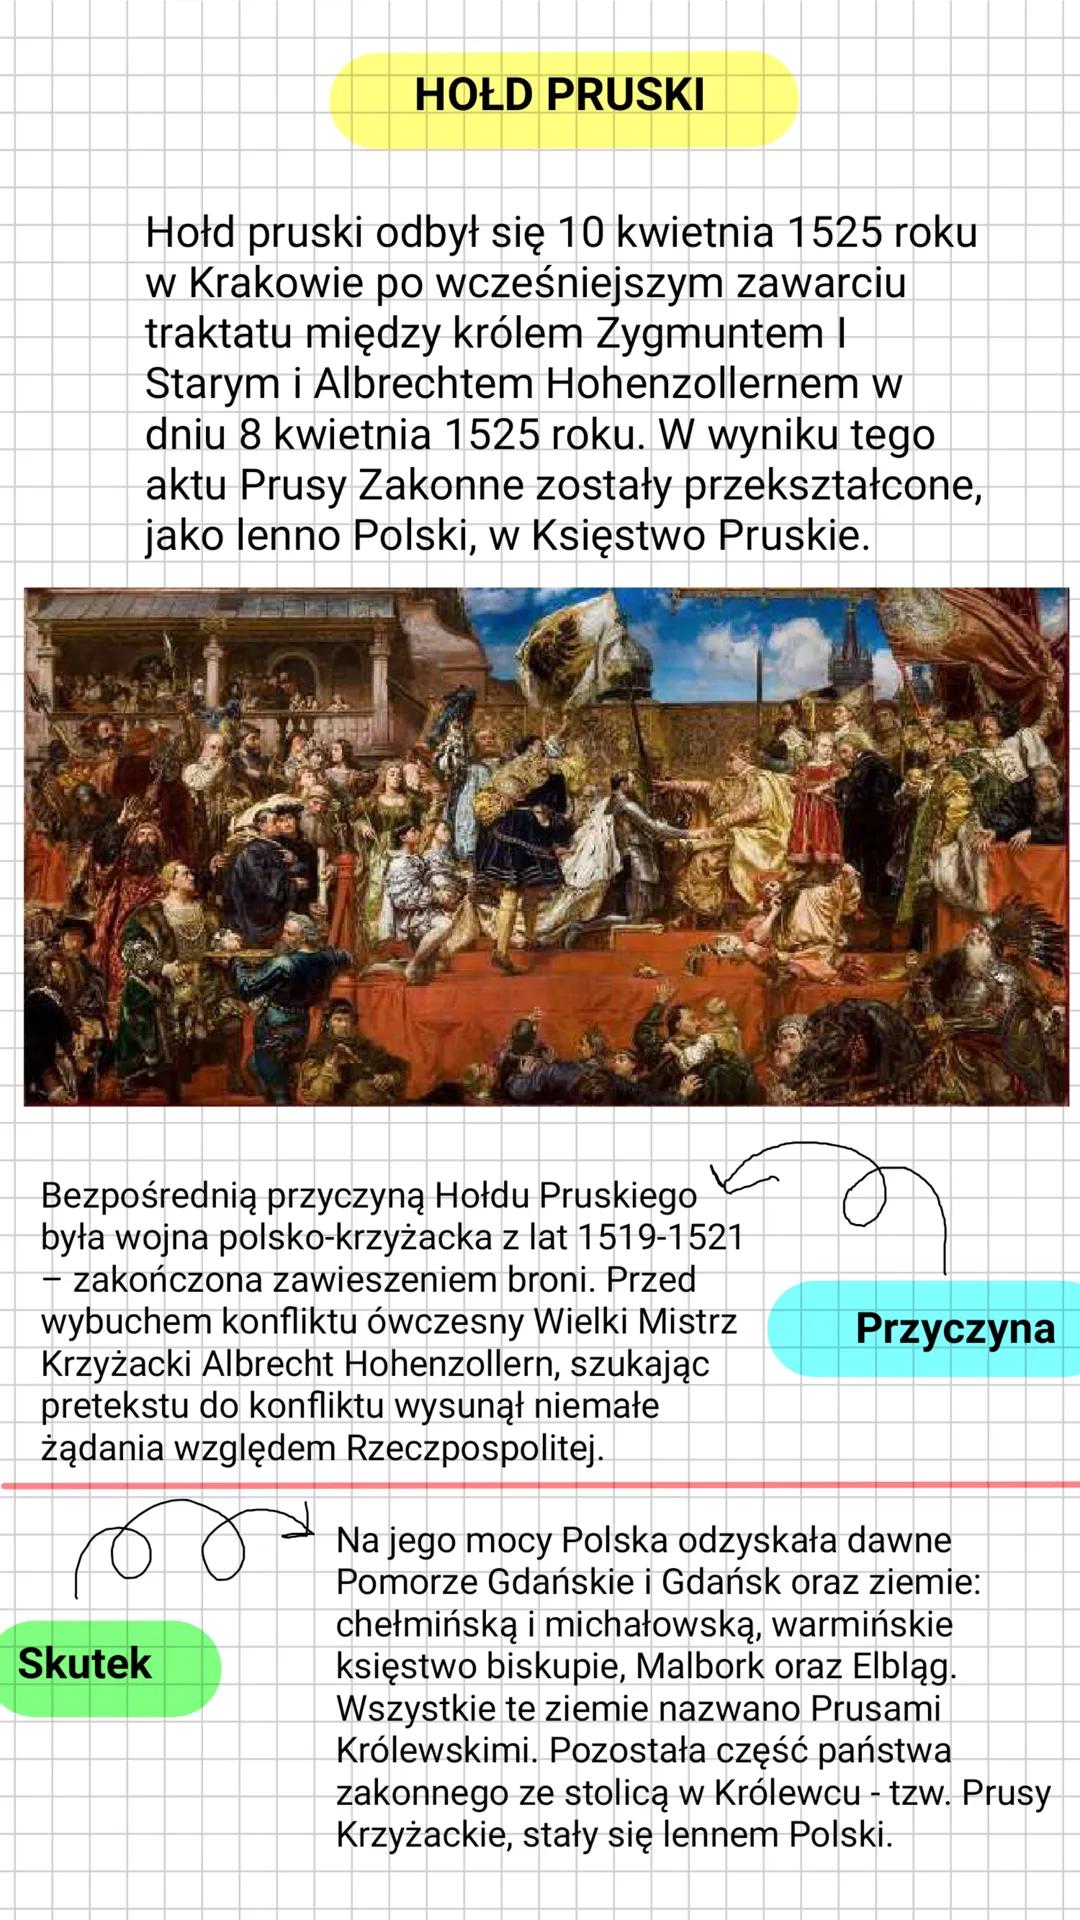 HOLD PRUSKI
Hold pruski odbył się 10 kwietnia 1525 roku
w Krakowie po wcześniejszym zawarciu
traktatu między królem Zygmuntem I
Starym i Alb